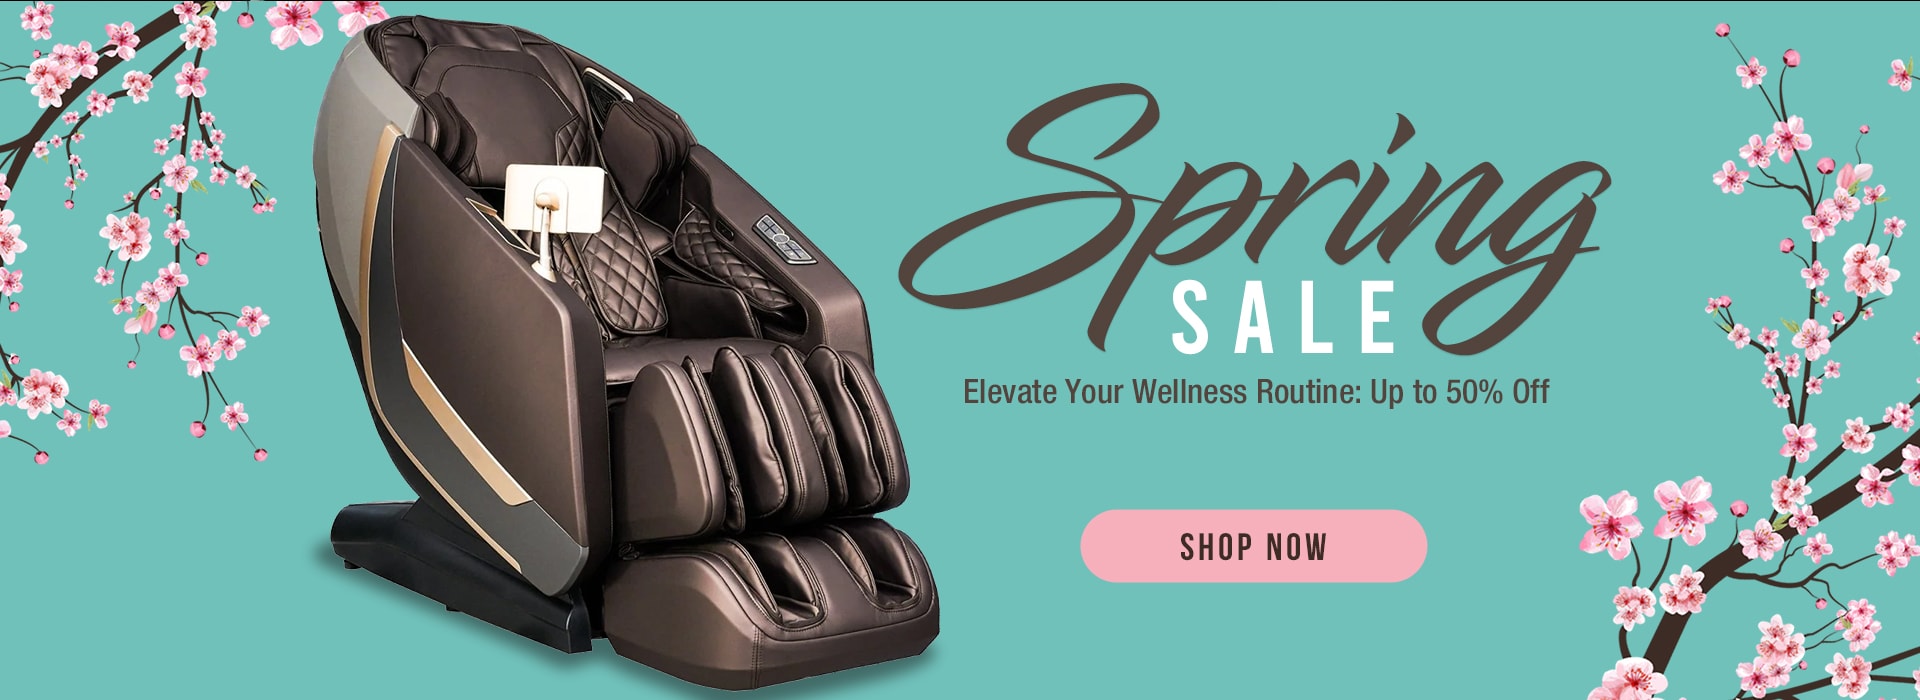 Massage Chair - Spring Sale1621243260e1af0c20-0